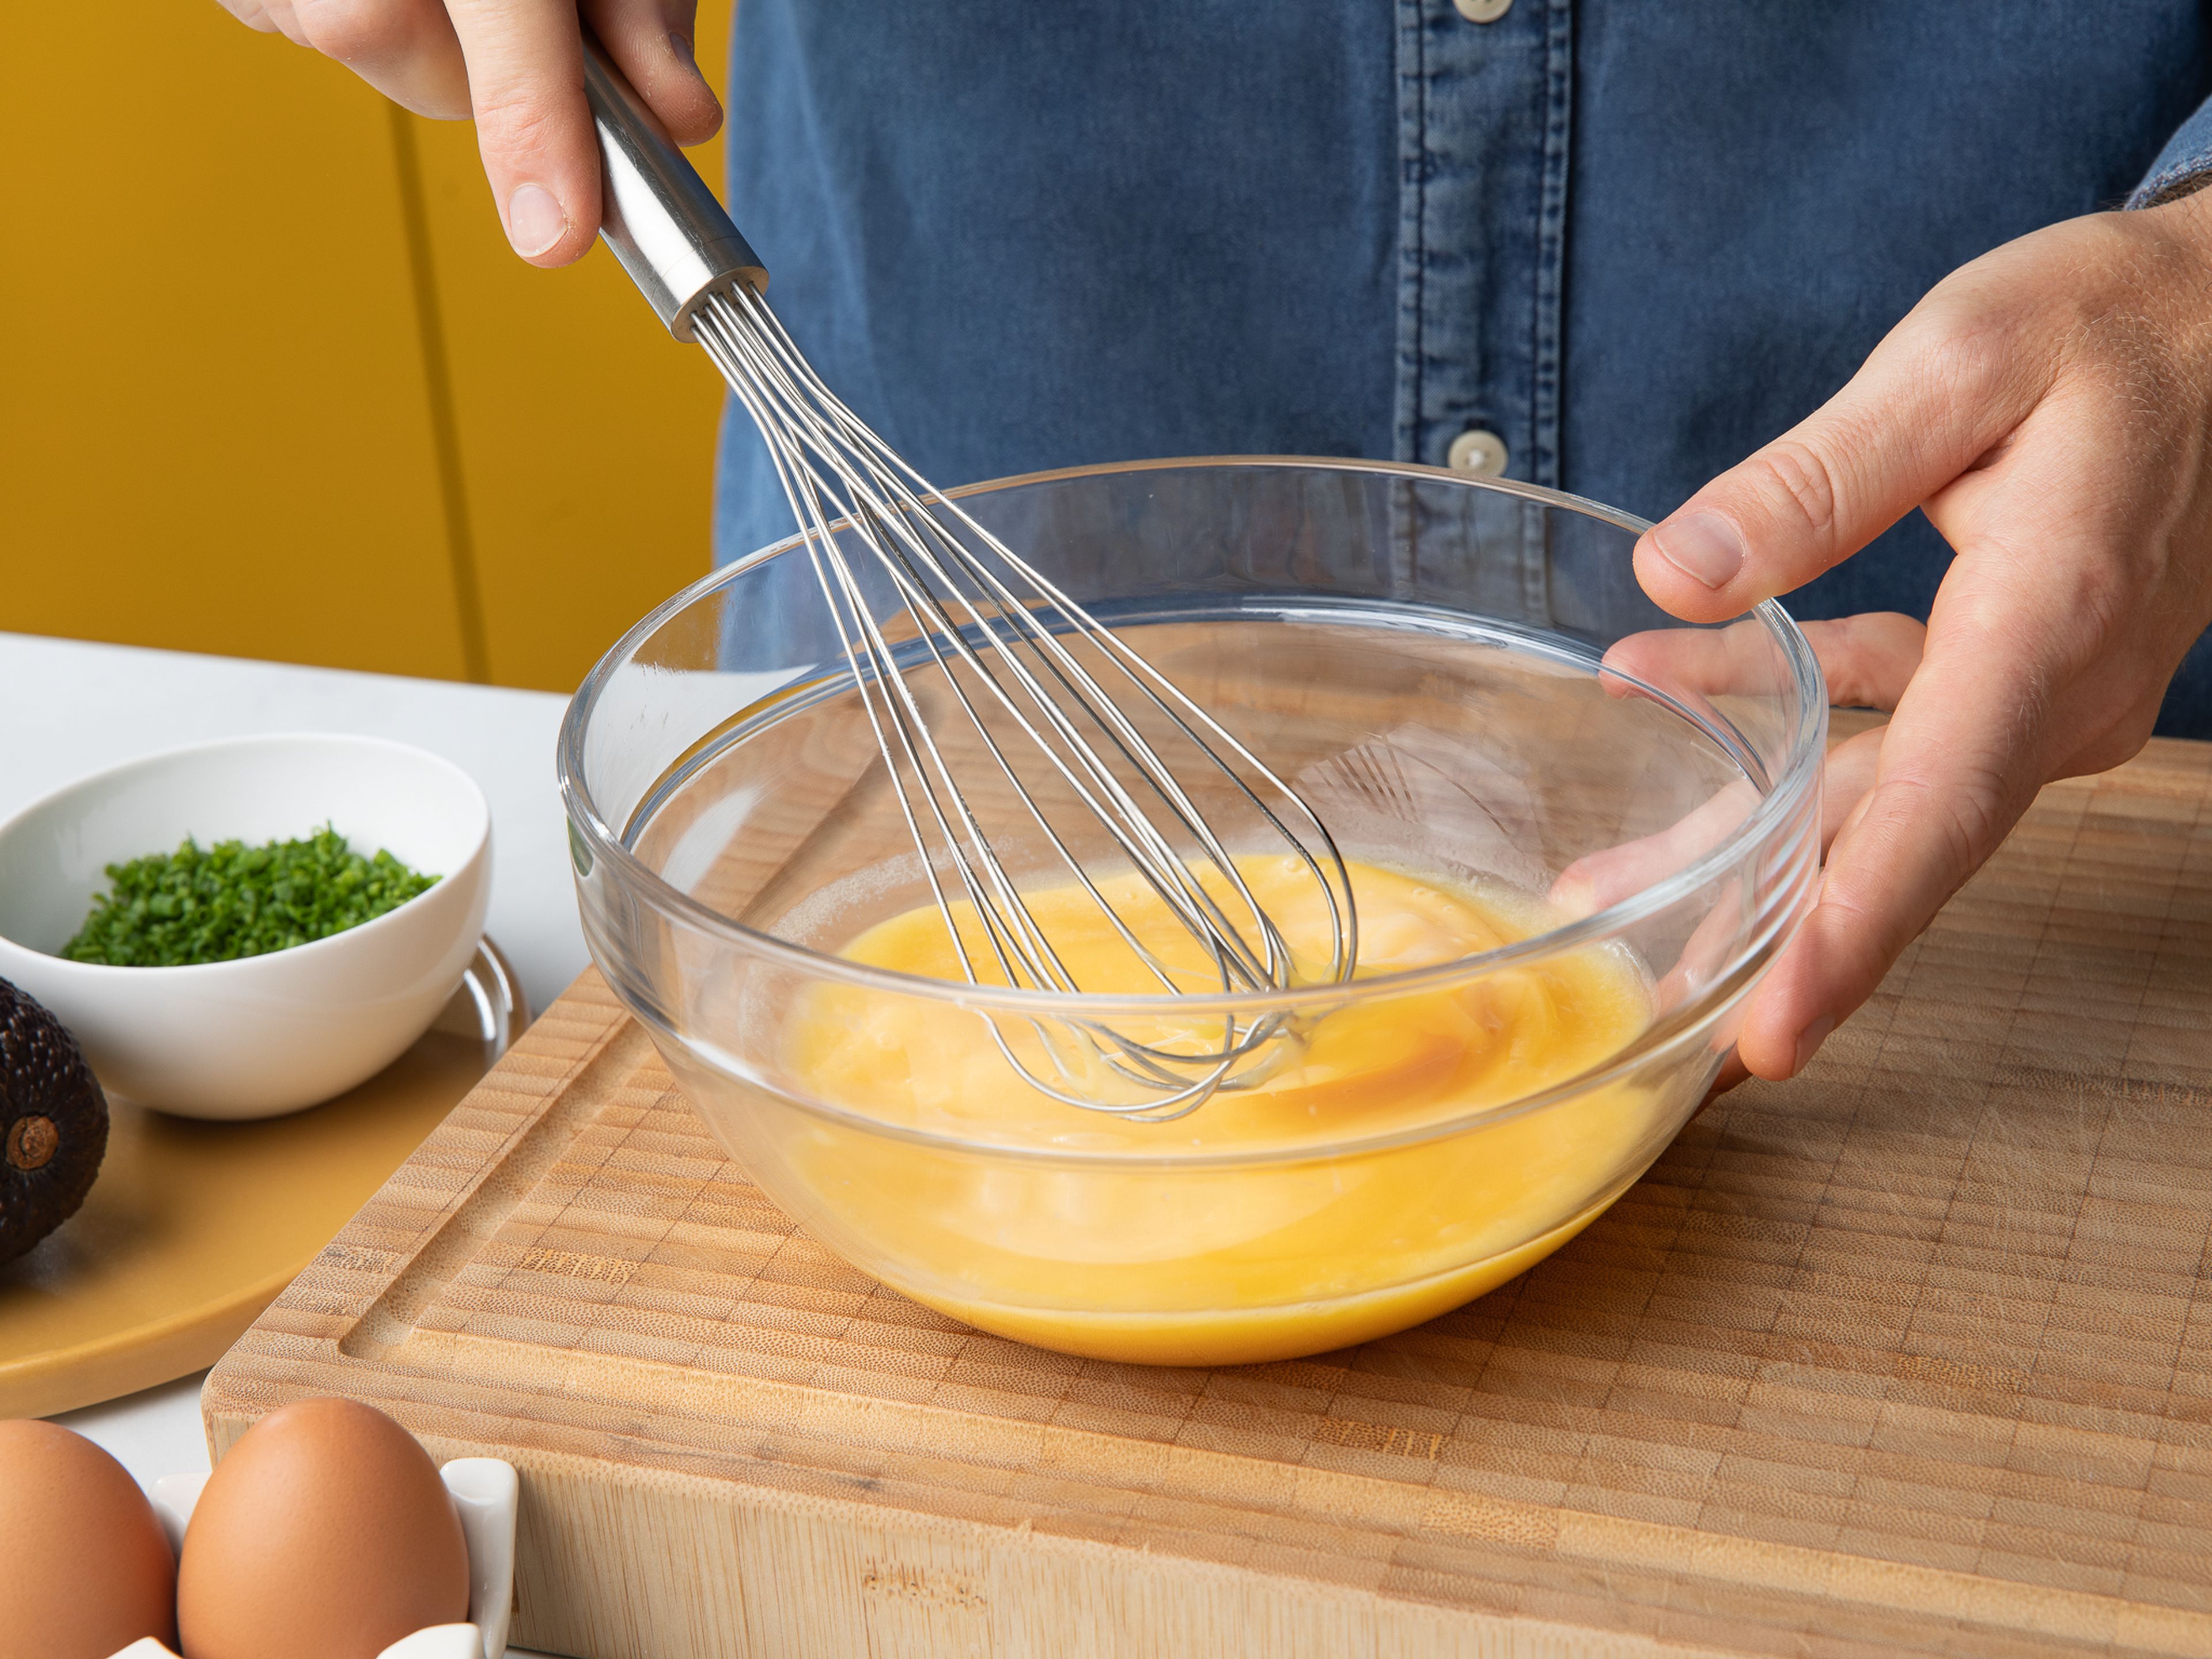 Jede Toastscheibe mit Butter bestreichen, dann die Eier mit Sahne und Salz verquirlen. Die Avocado halbieren, den Kern entfernen und mit einem Löffel aus der Schale lösen. Schneide die Avocado nun der Länge nach in 5 mm dicke Scheiben. Mayonnaise mit Kondensmilch mischen und in einen kleinen Spritzbeutel füllen, dann den Schnittlauch fein schneiden.